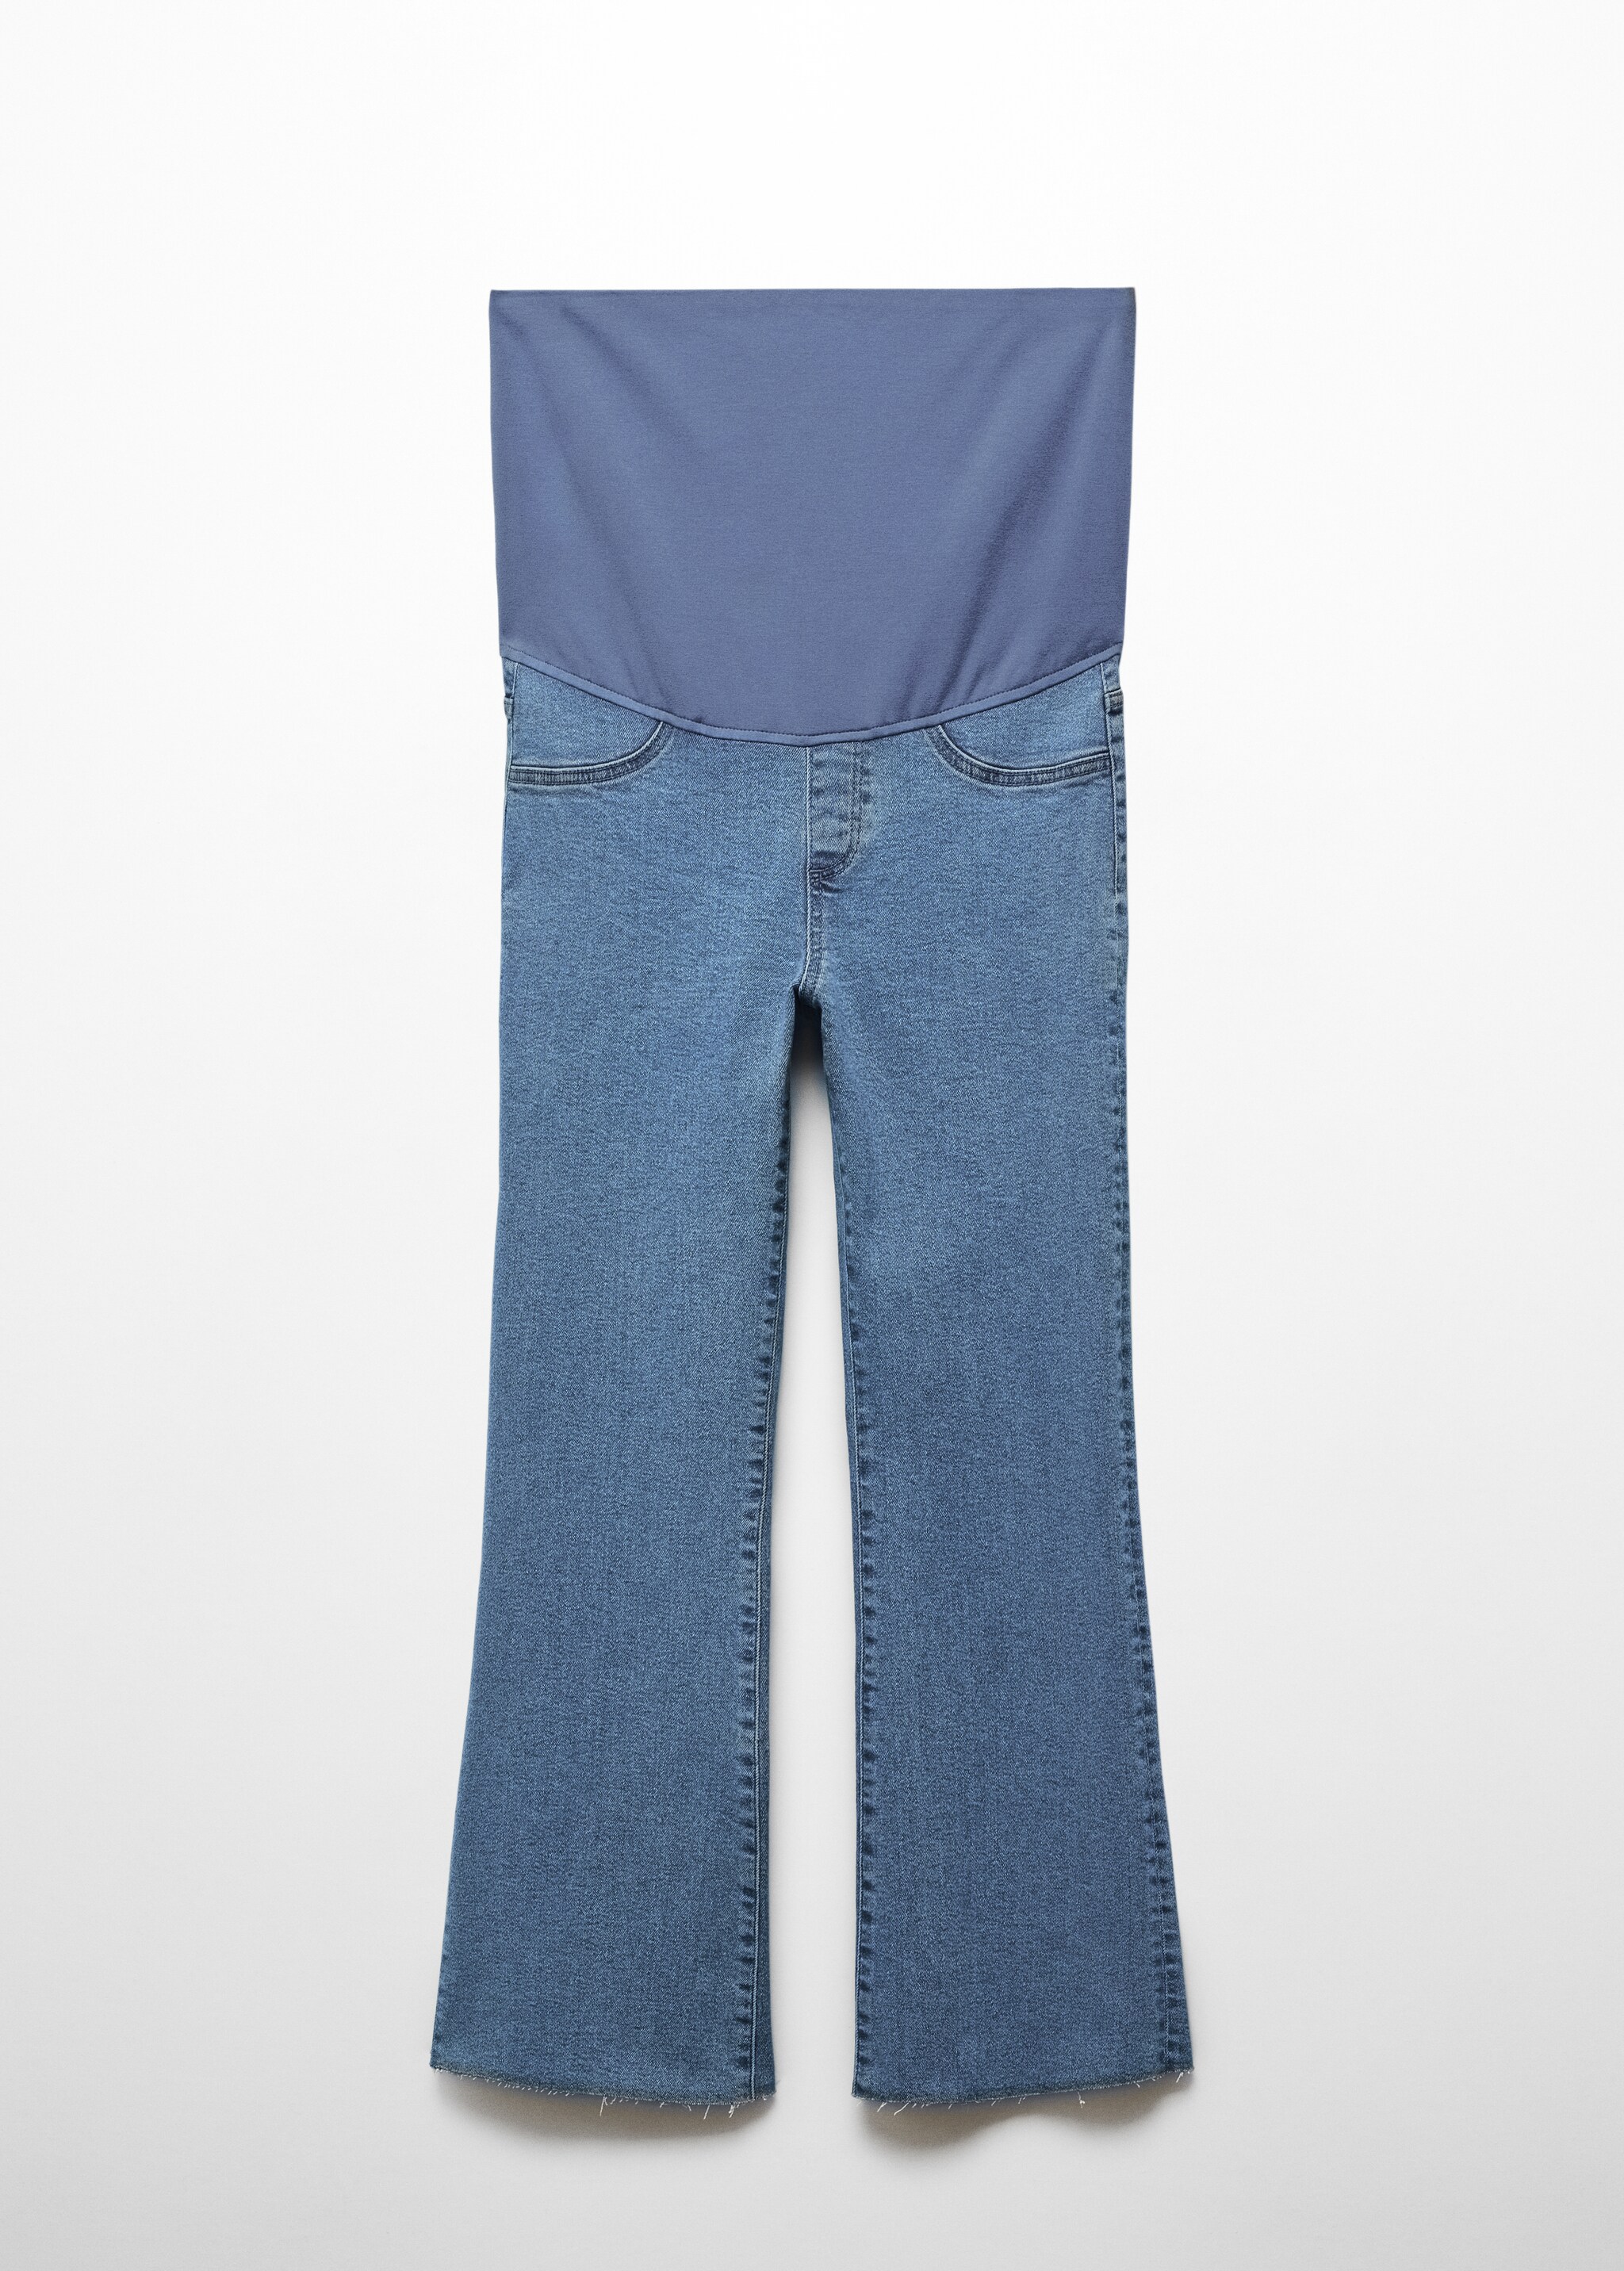 Укороченные джинсы flare для будущей мамы - Изделие без модели